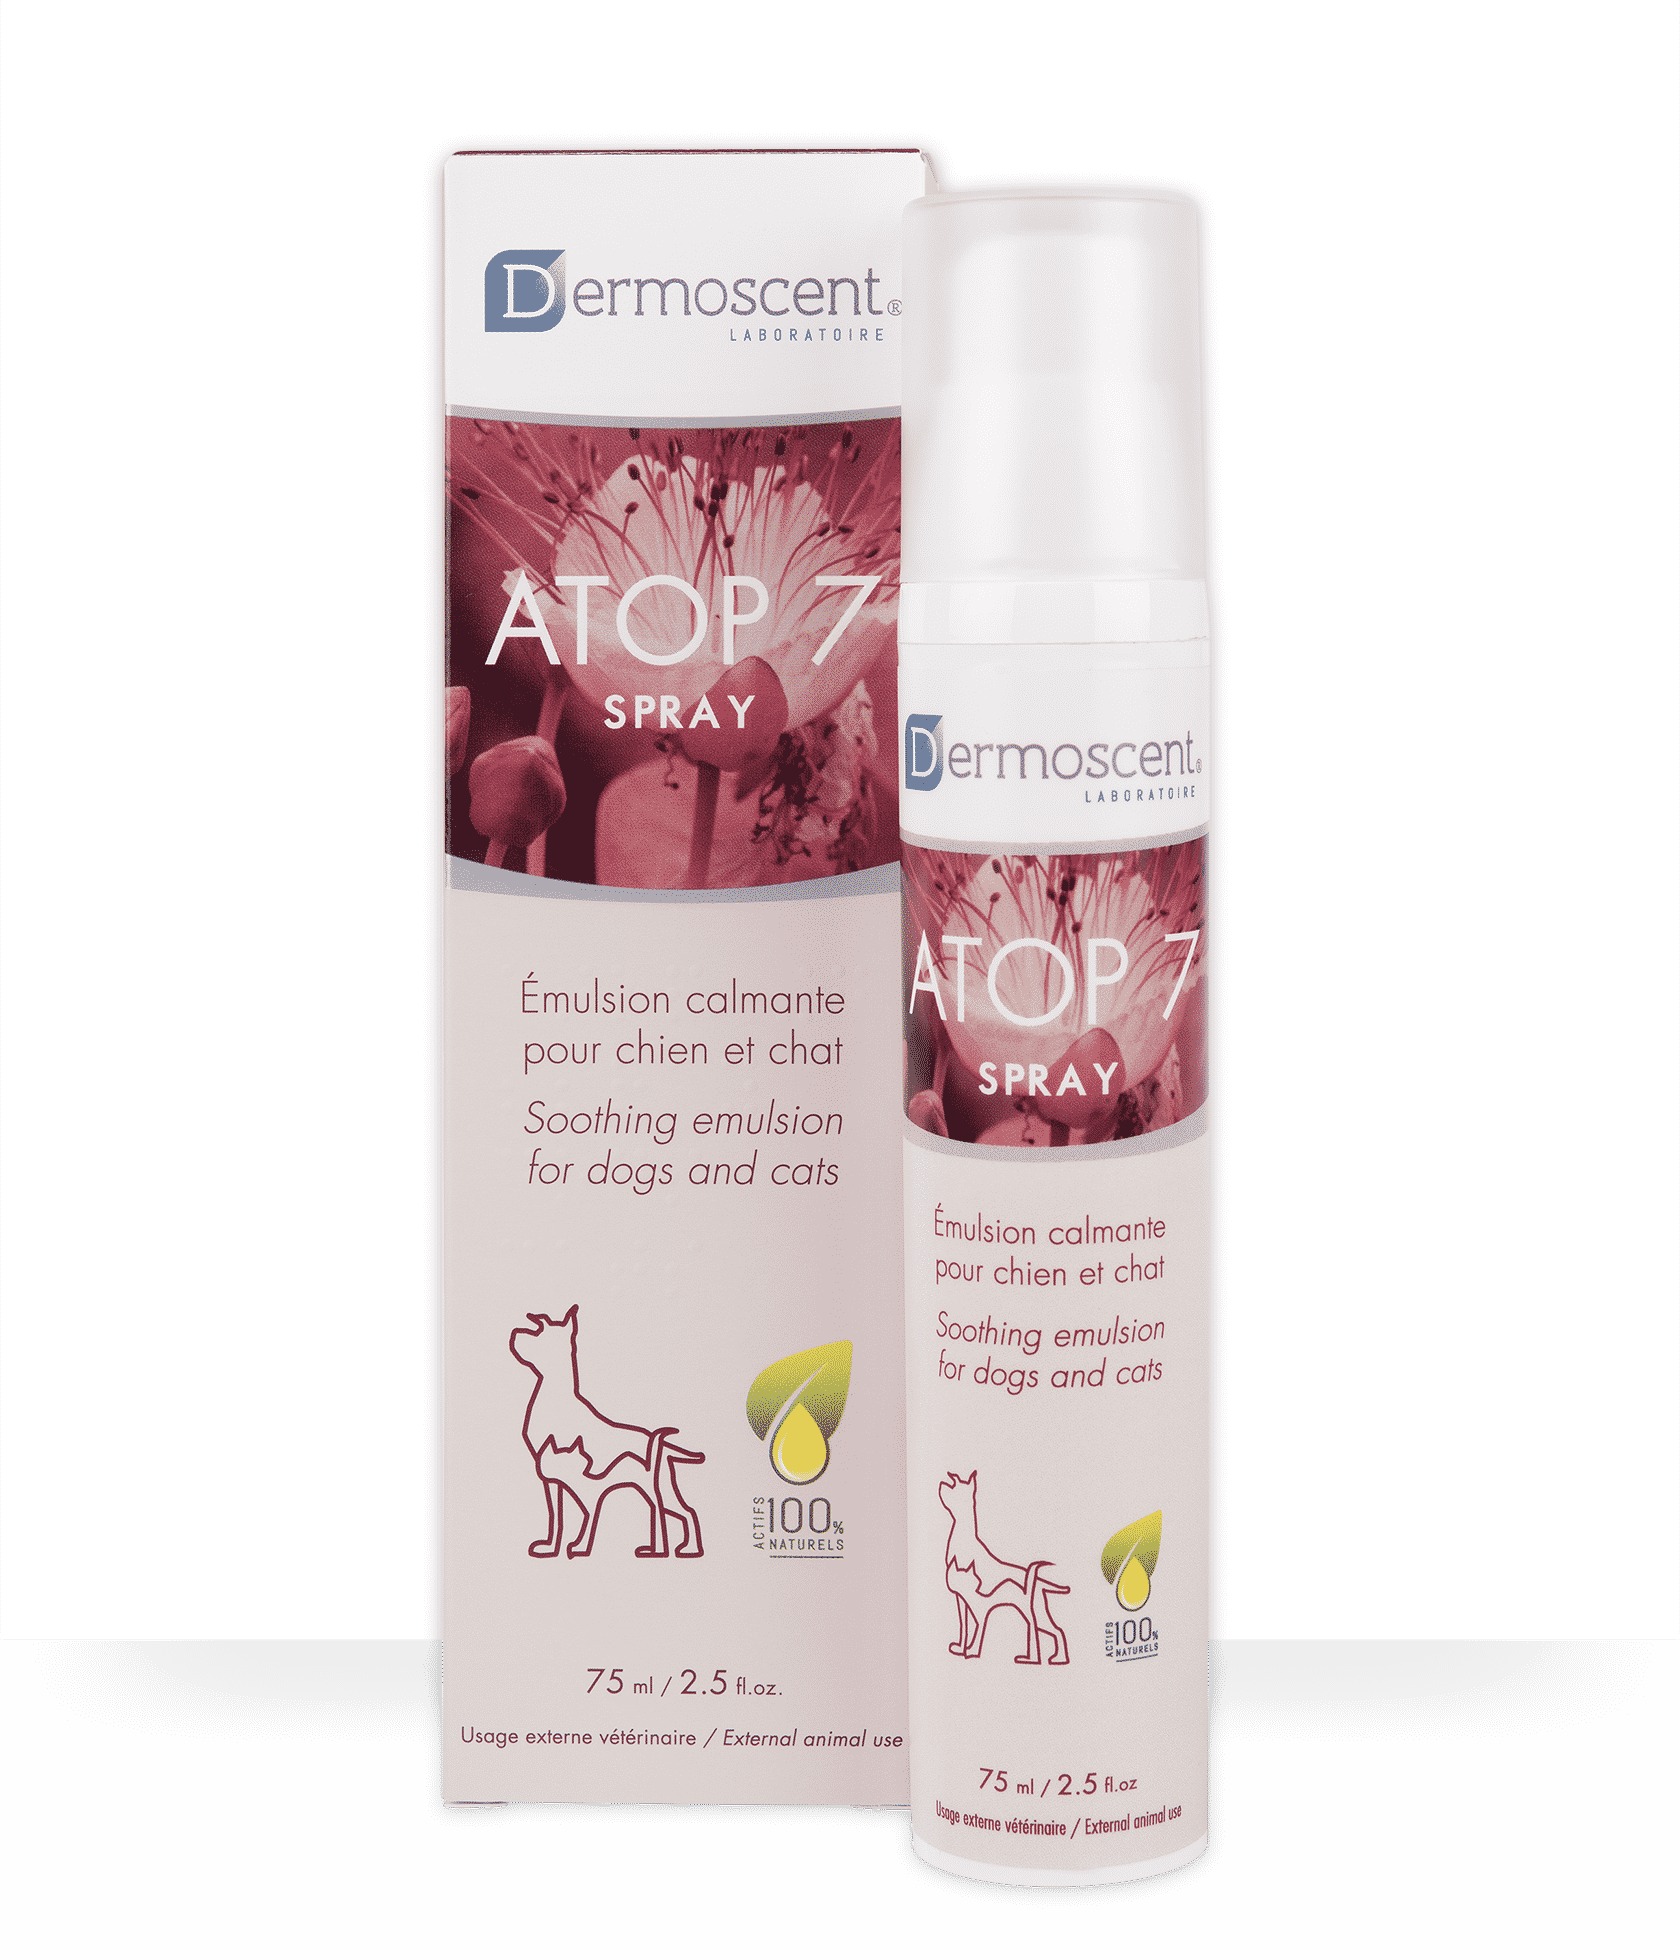 Atop 7 Spray Dermoscent, émulsion calmante pour les peaux irritées chez le chien et le chat